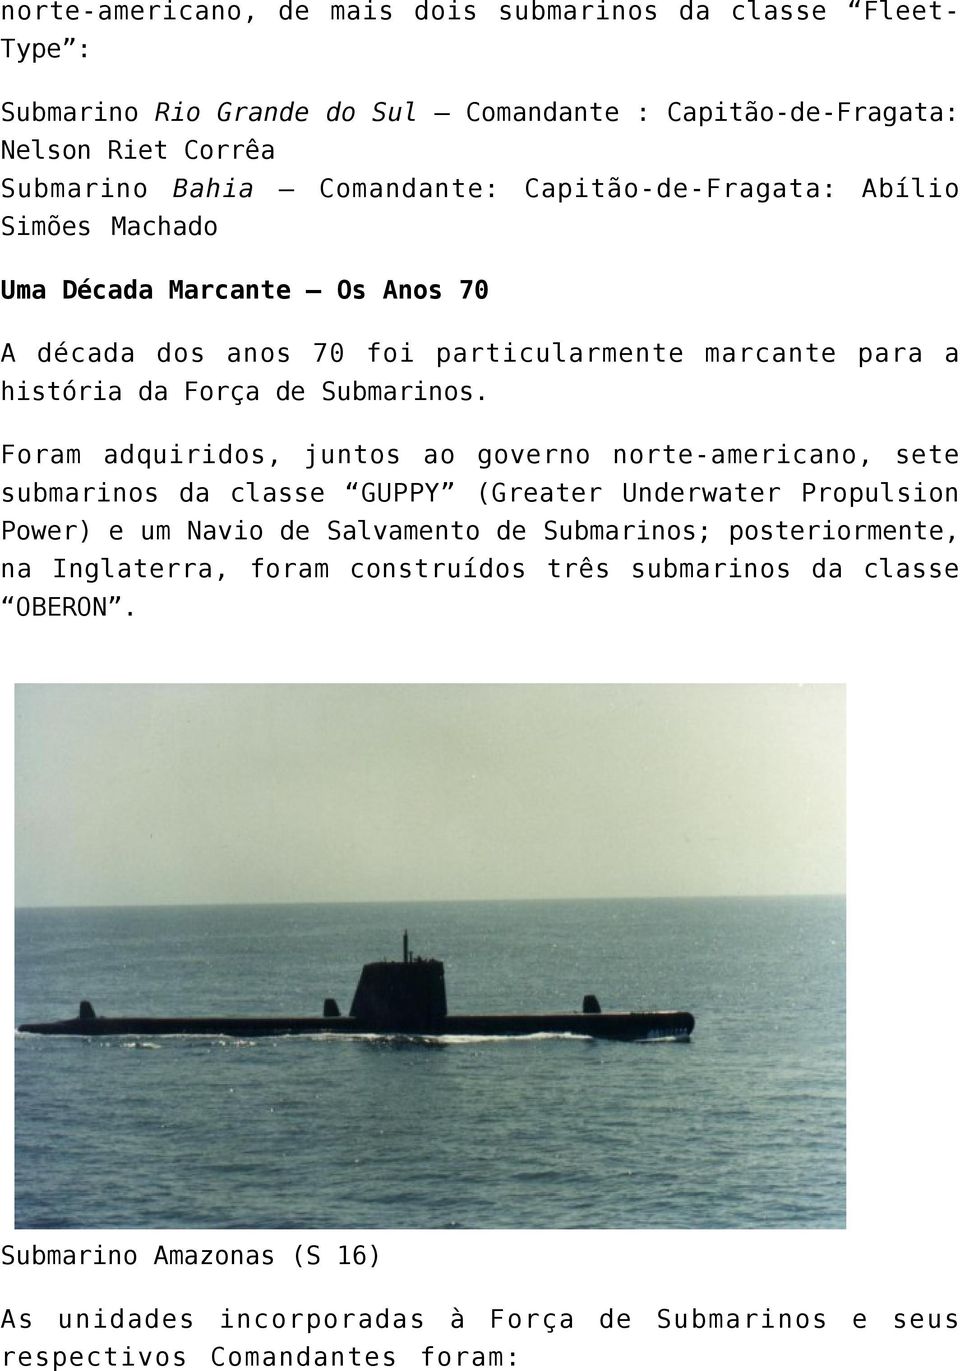 Foram adquiridos, juntos ao governo norte-americano, sete submarinos da classe GUPPY (Greater Underwater Propulsion Power) e um Navio de Salvamento de Submarinos;